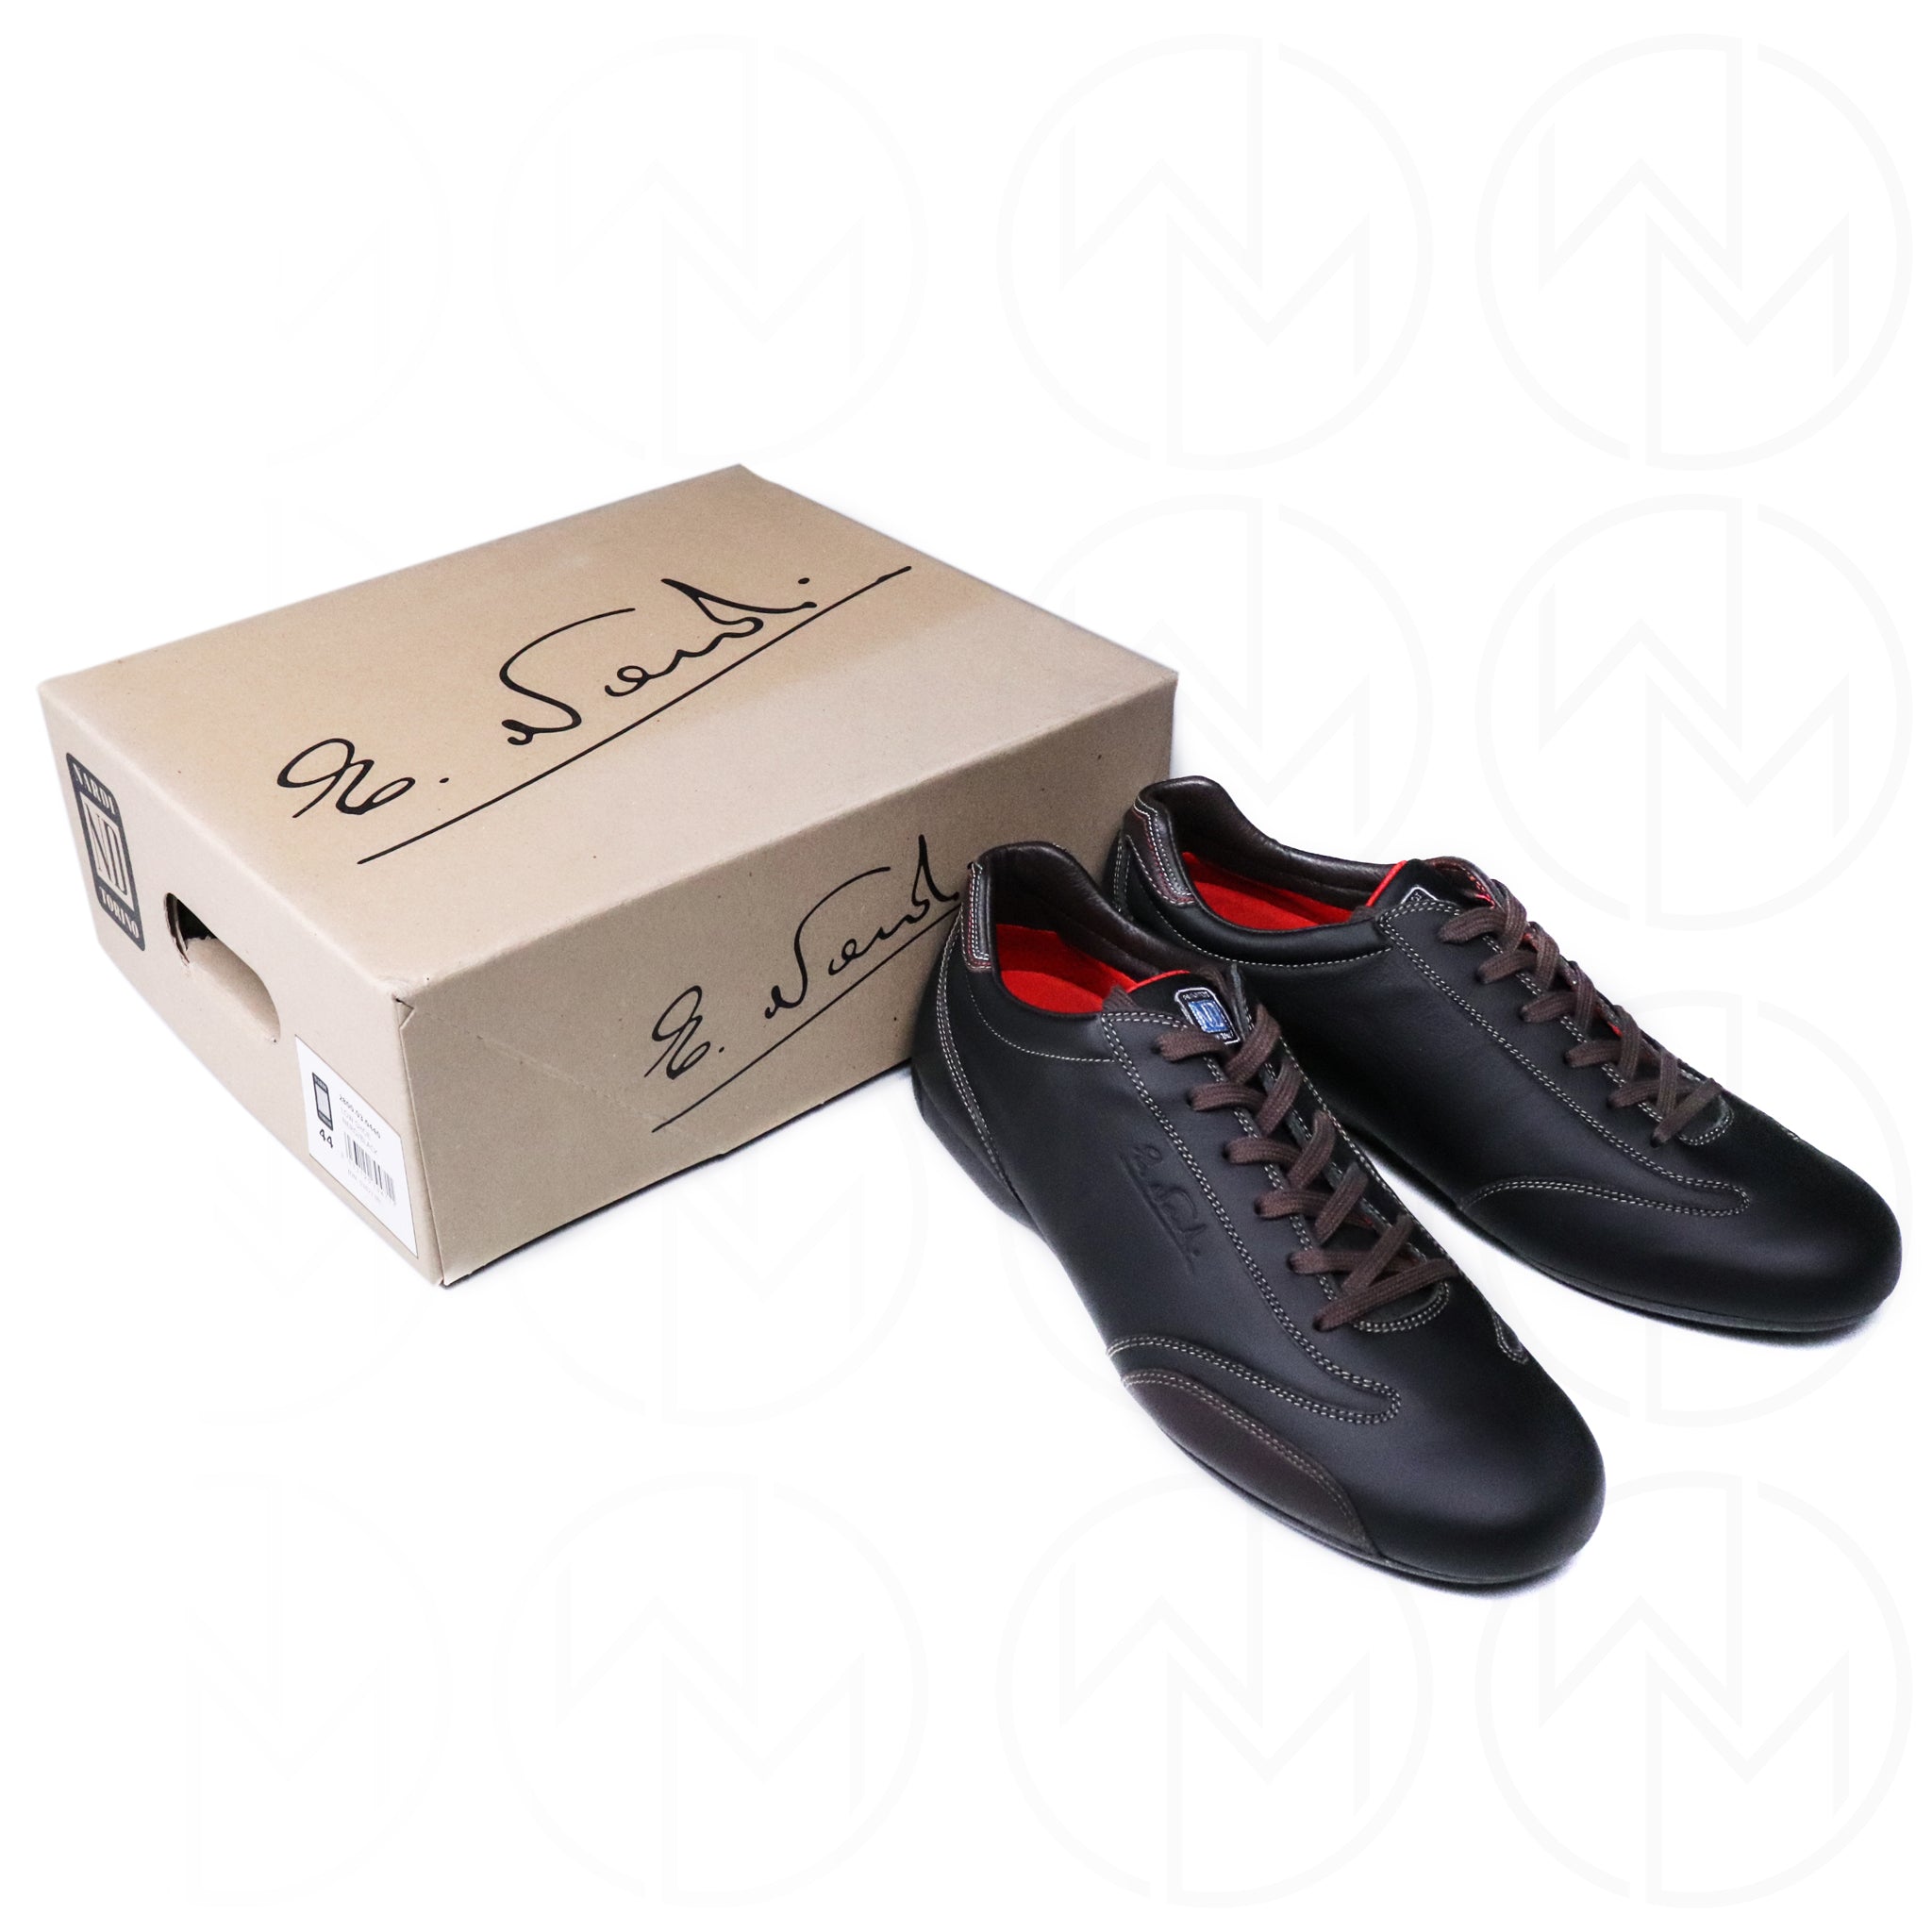 Nardi Footwear - Low Cut Shoe